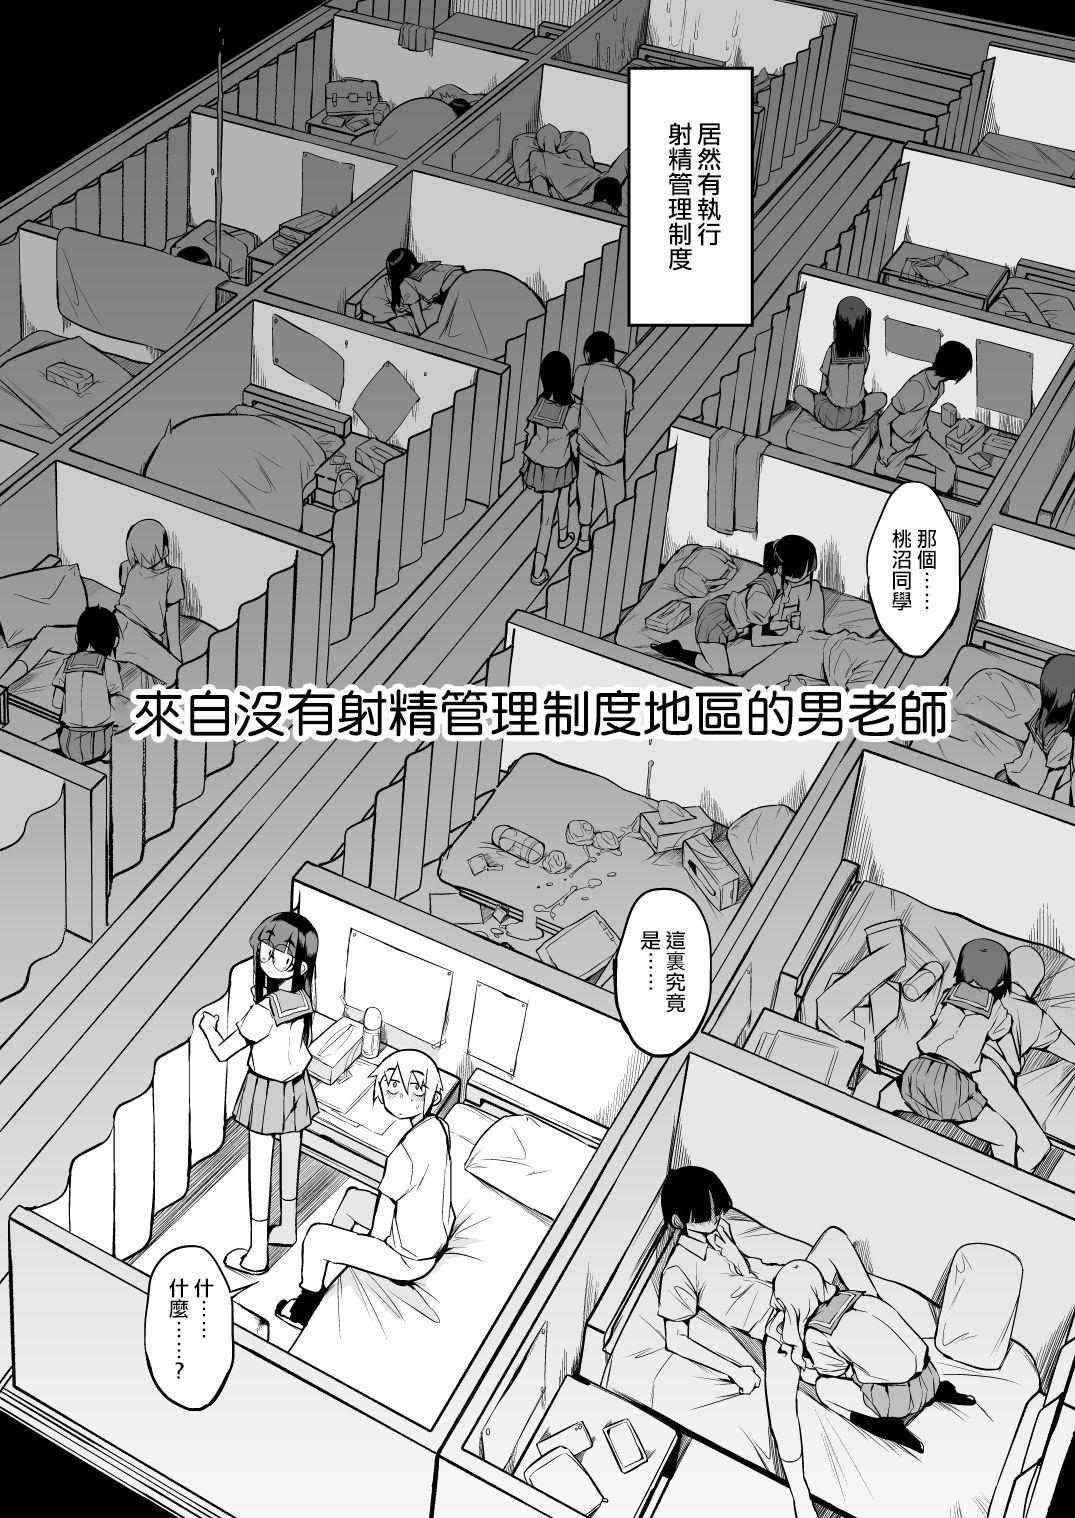 Cum Inside Shasei Kanri Seido no Nai Ken kara Kita Otoko no Sensei 丨來自沒有射精管理制度地區的男老師 - Original Old - Page 6